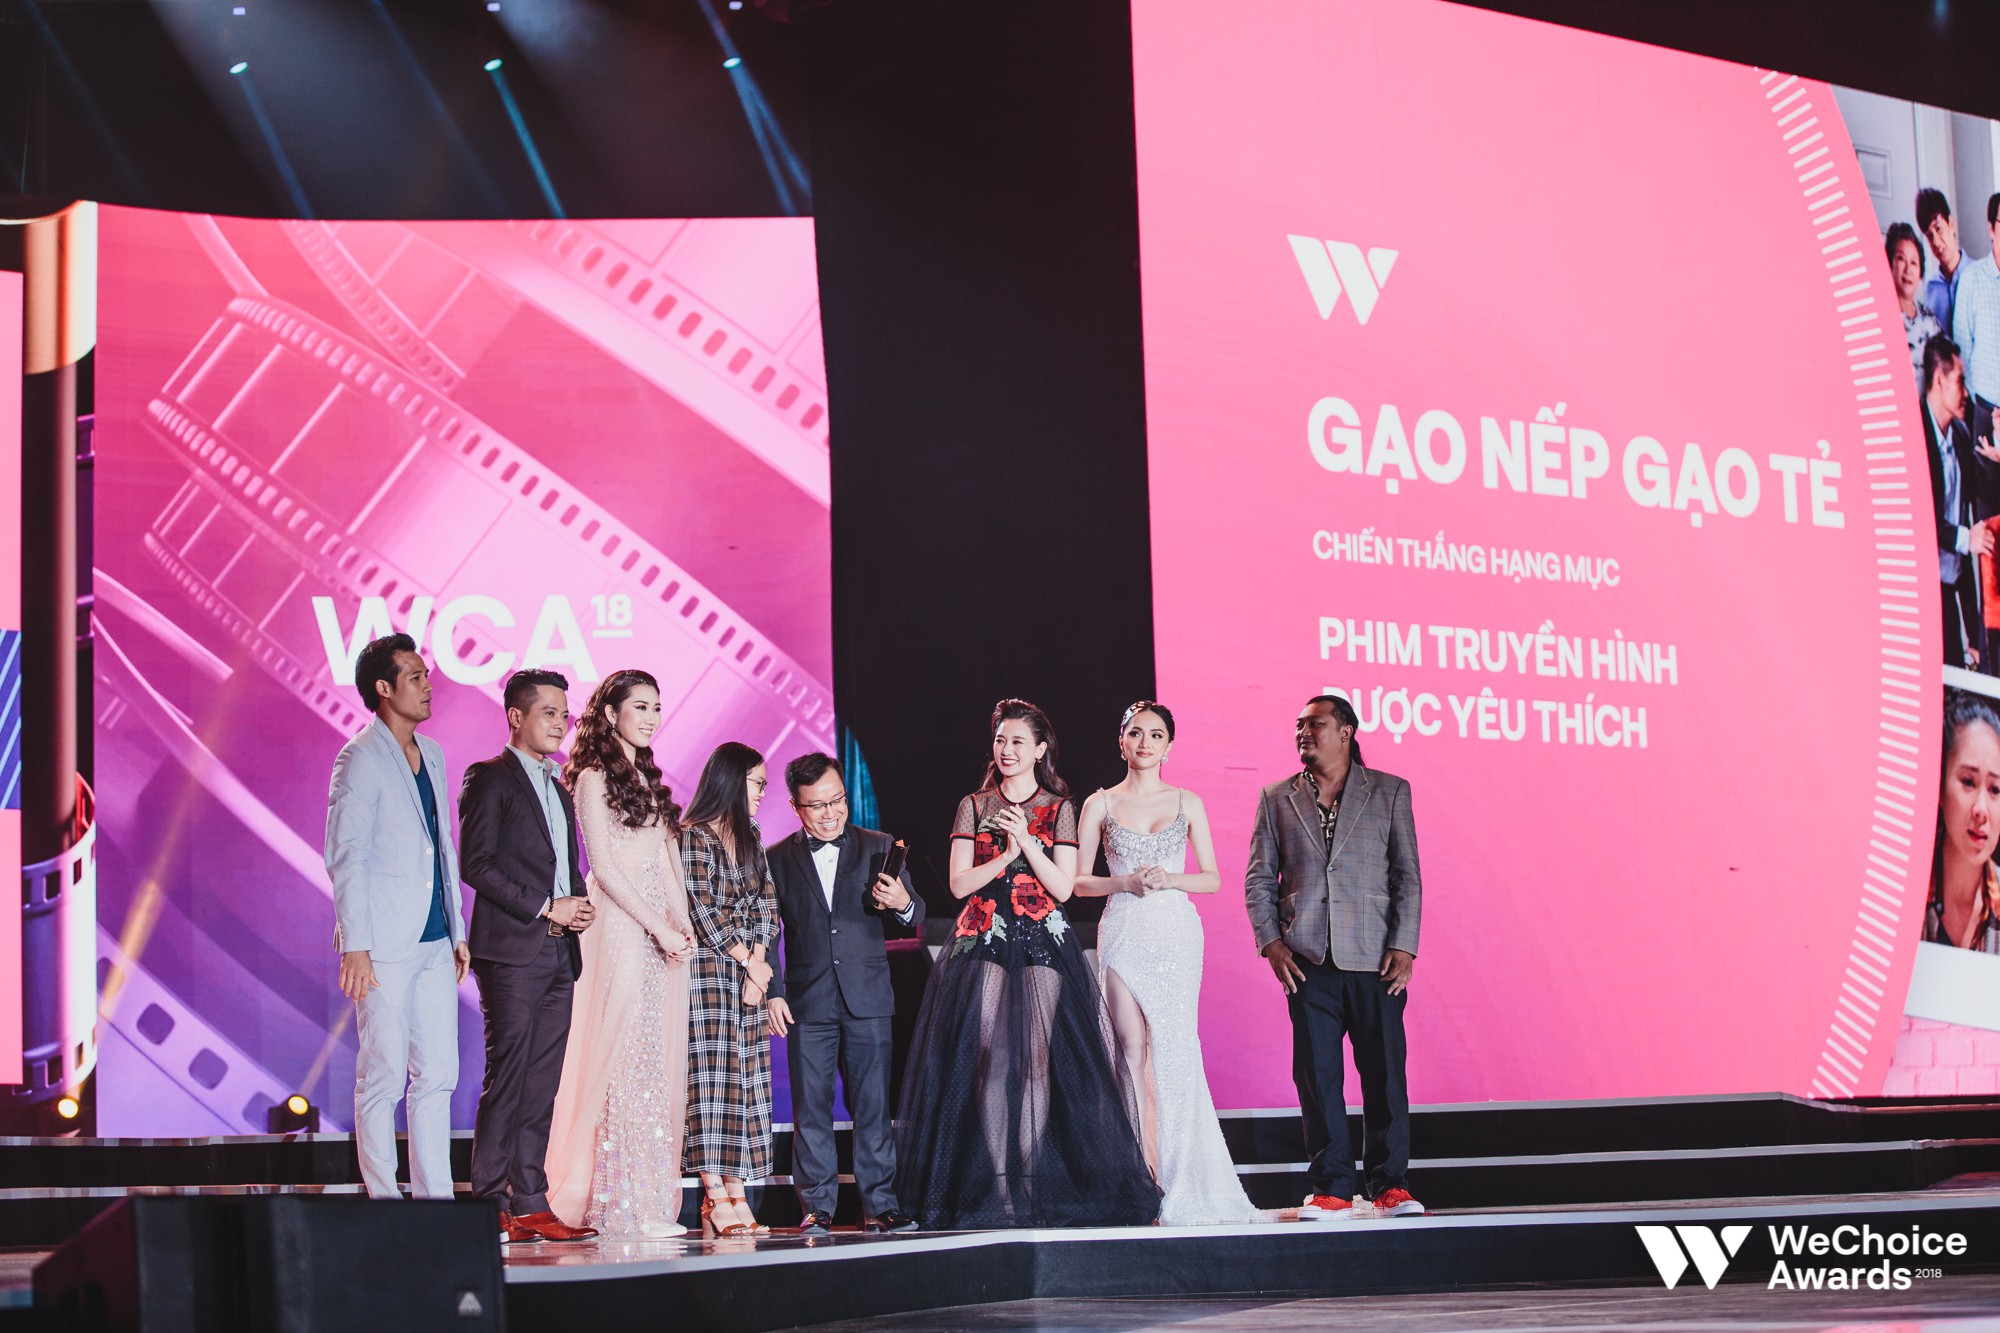 Wechoice Awards 2018: Phim Gạo nếp gạo tẻ được vinh danh giải thưởng Ngôi Sao Xanh